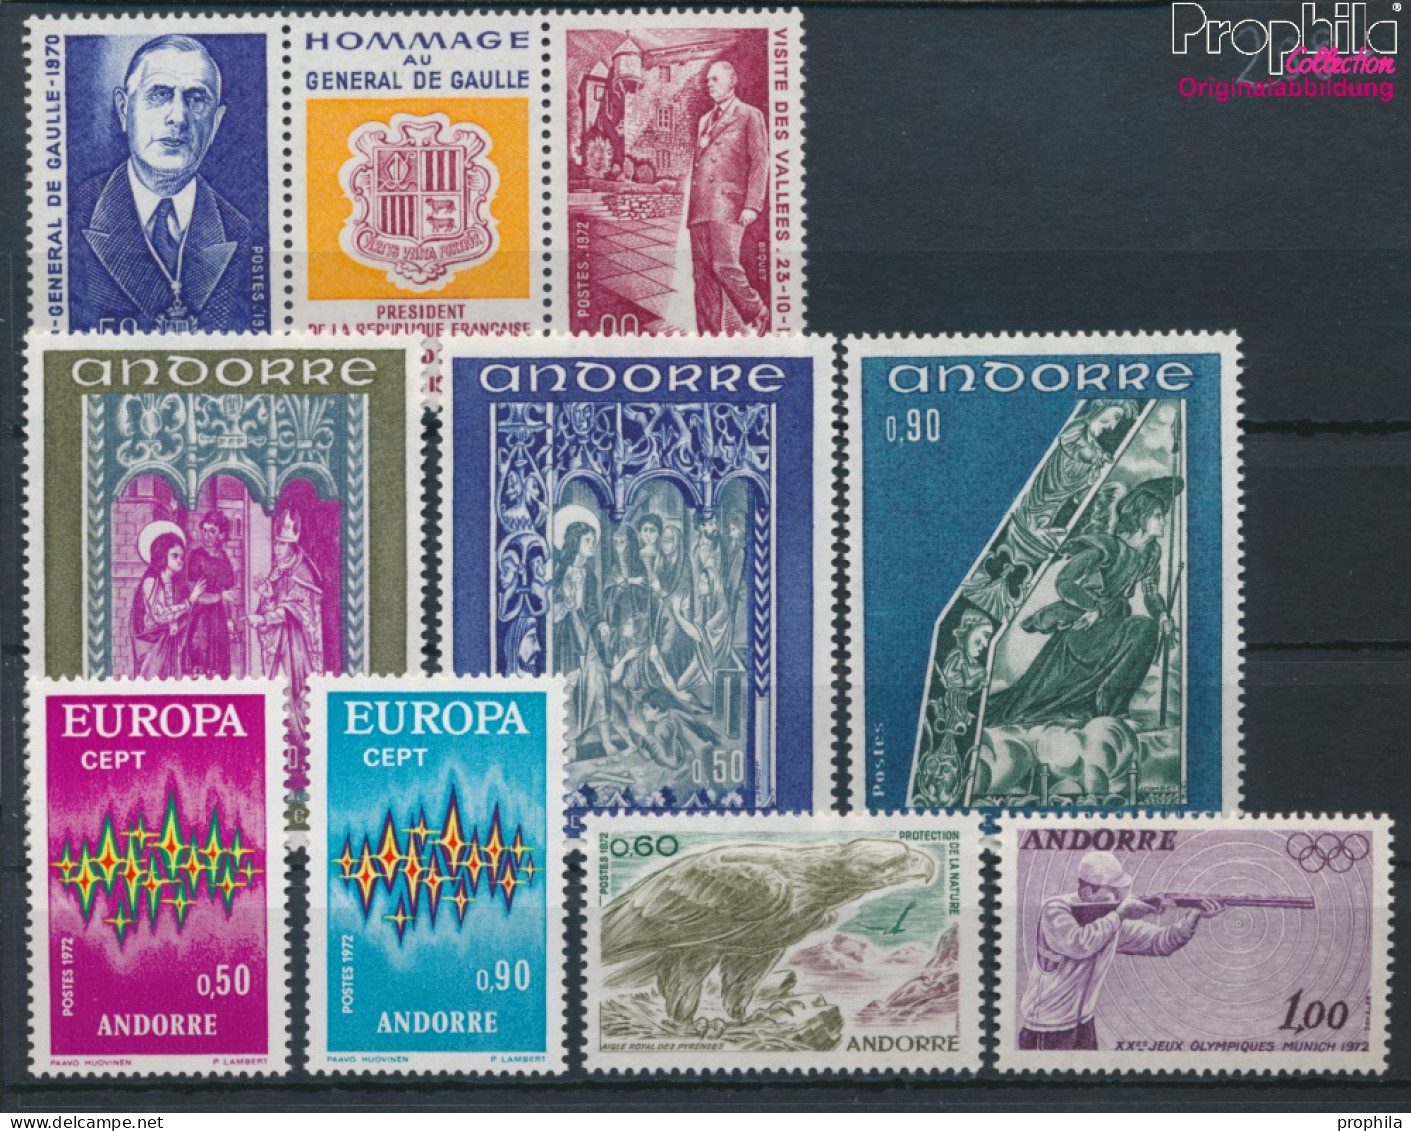 Andorra - Französische Post Postfrisch Europa 1972 Europa, Naturschutz, Olympia U.a.  (10368752 - Ungebraucht